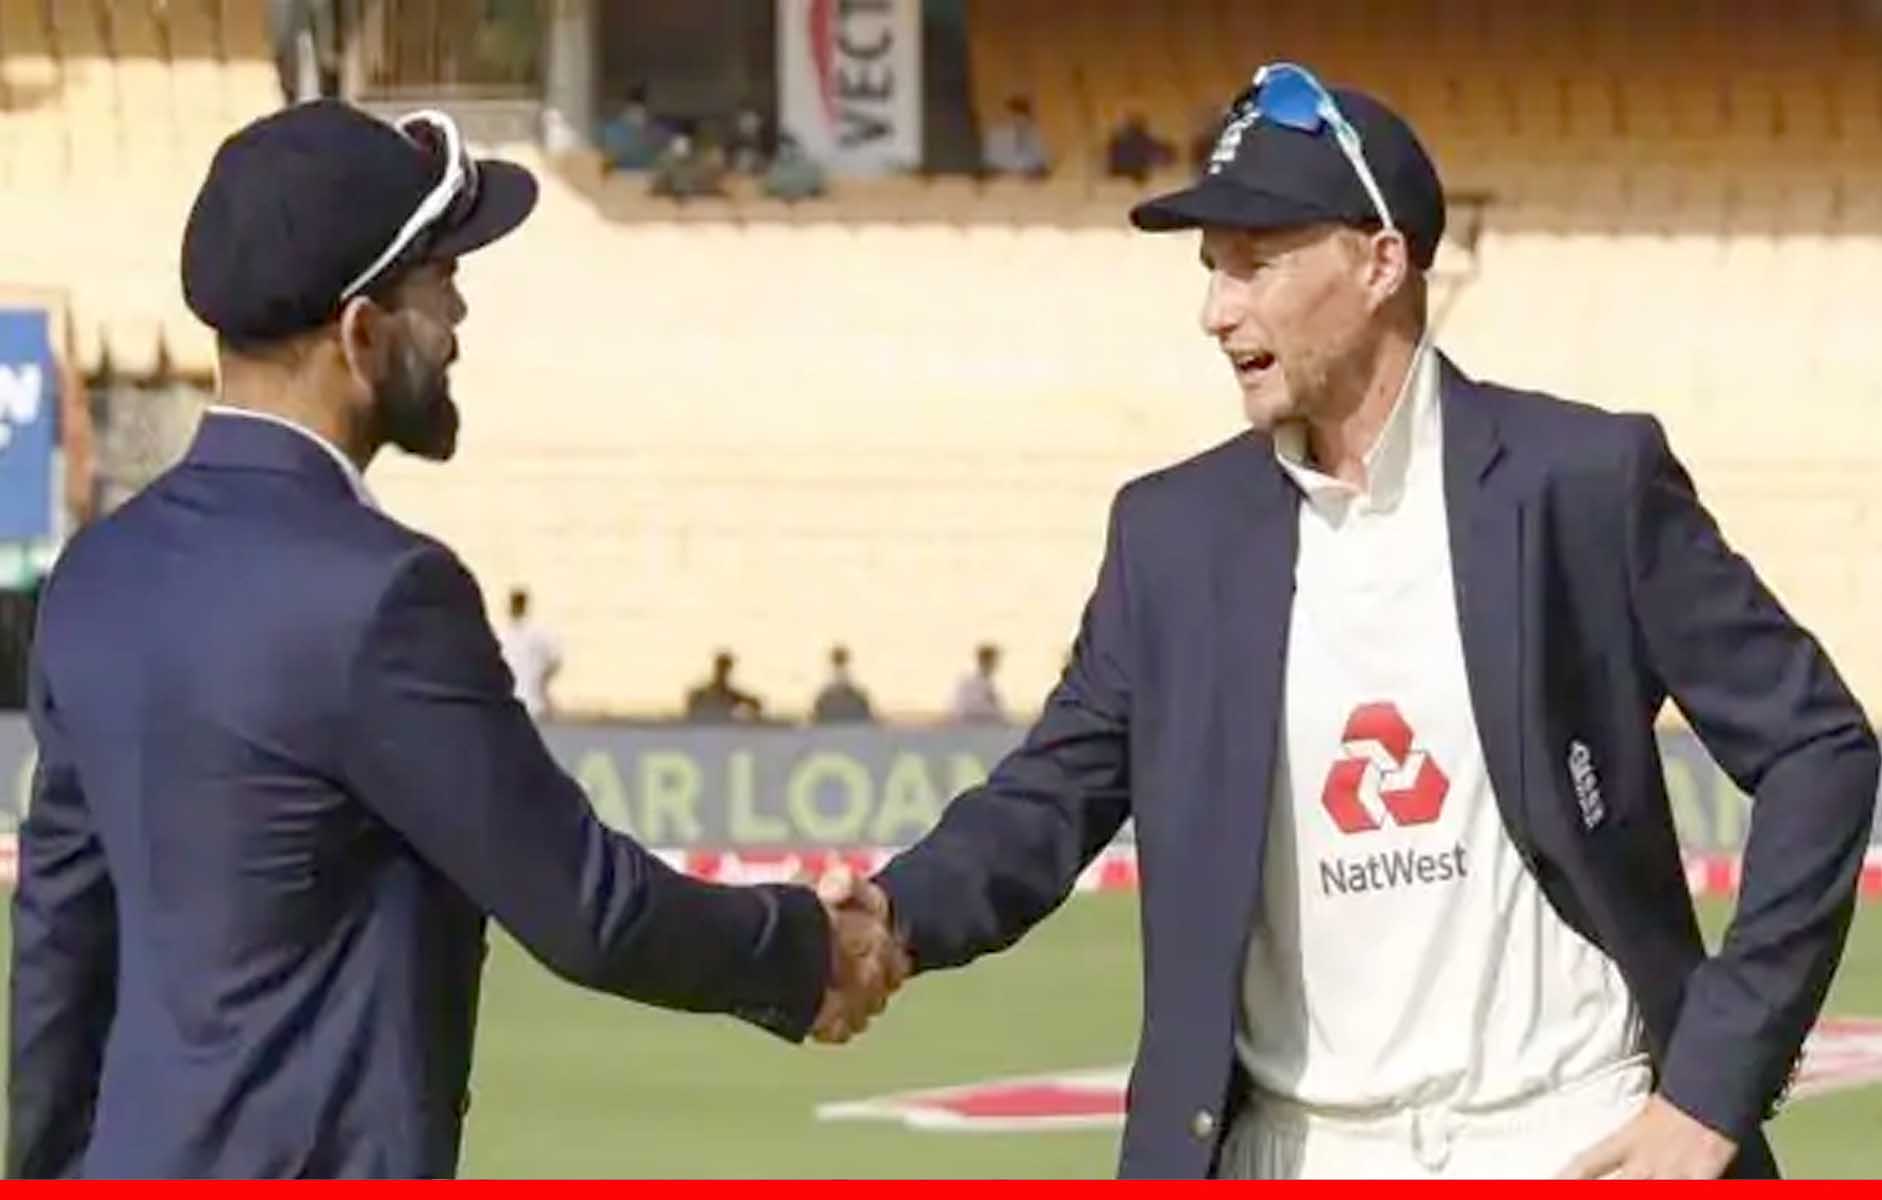 खिलाड़ियों के कोरोना पॉजिटिव पाए जाने के बावजूद भारत -इंग्लैंड सीरीज में नहीं होगा कड़ा बायो-बबल: ईसीबी